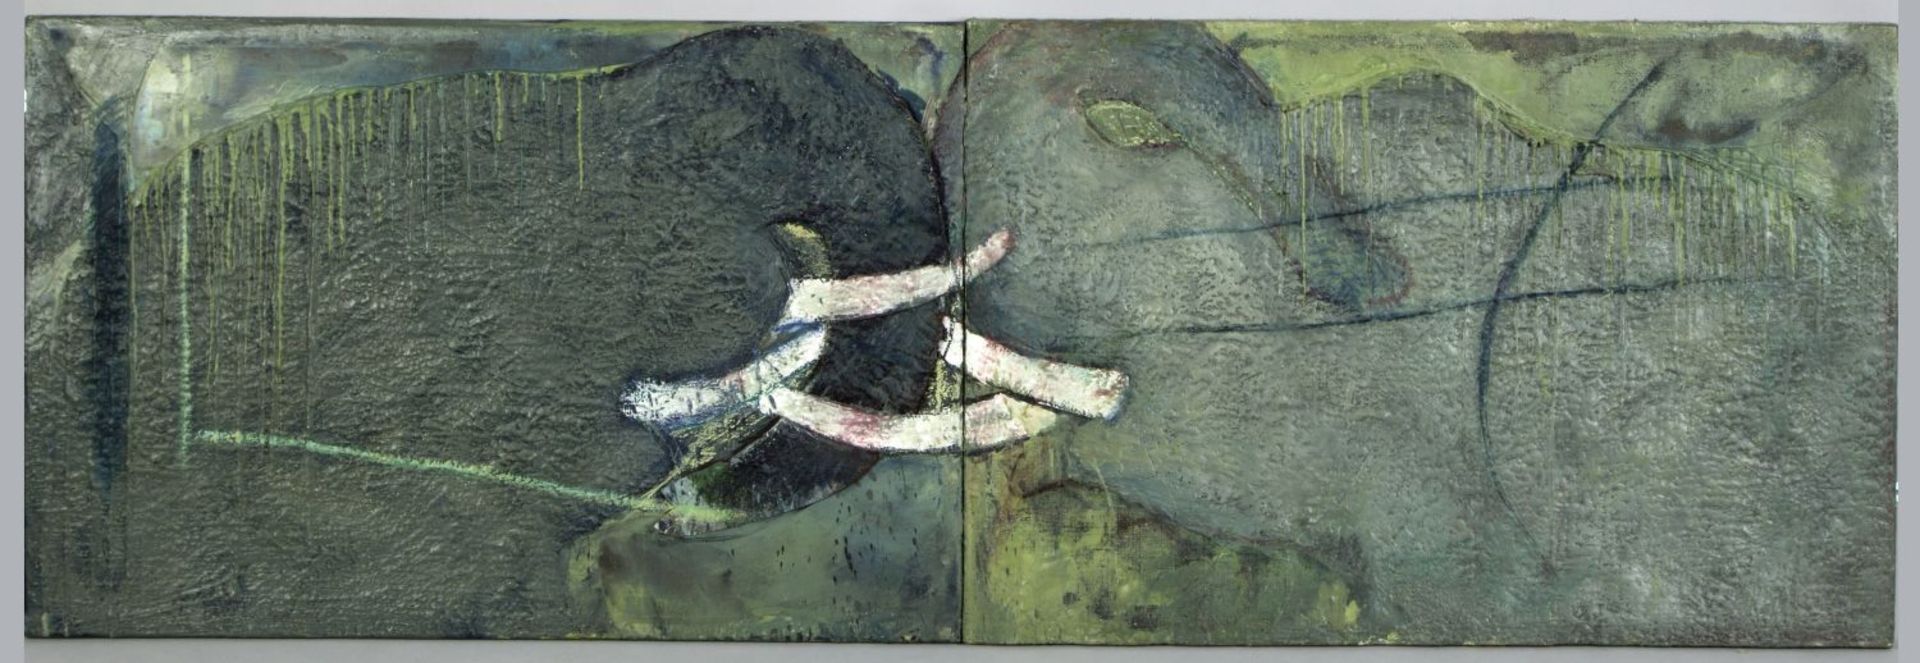 Gauerke, Hinrich. 1950 Hamburg Elefanten. Diptychon Wachs und Öl/Jute. 67 x 200,5 cm.